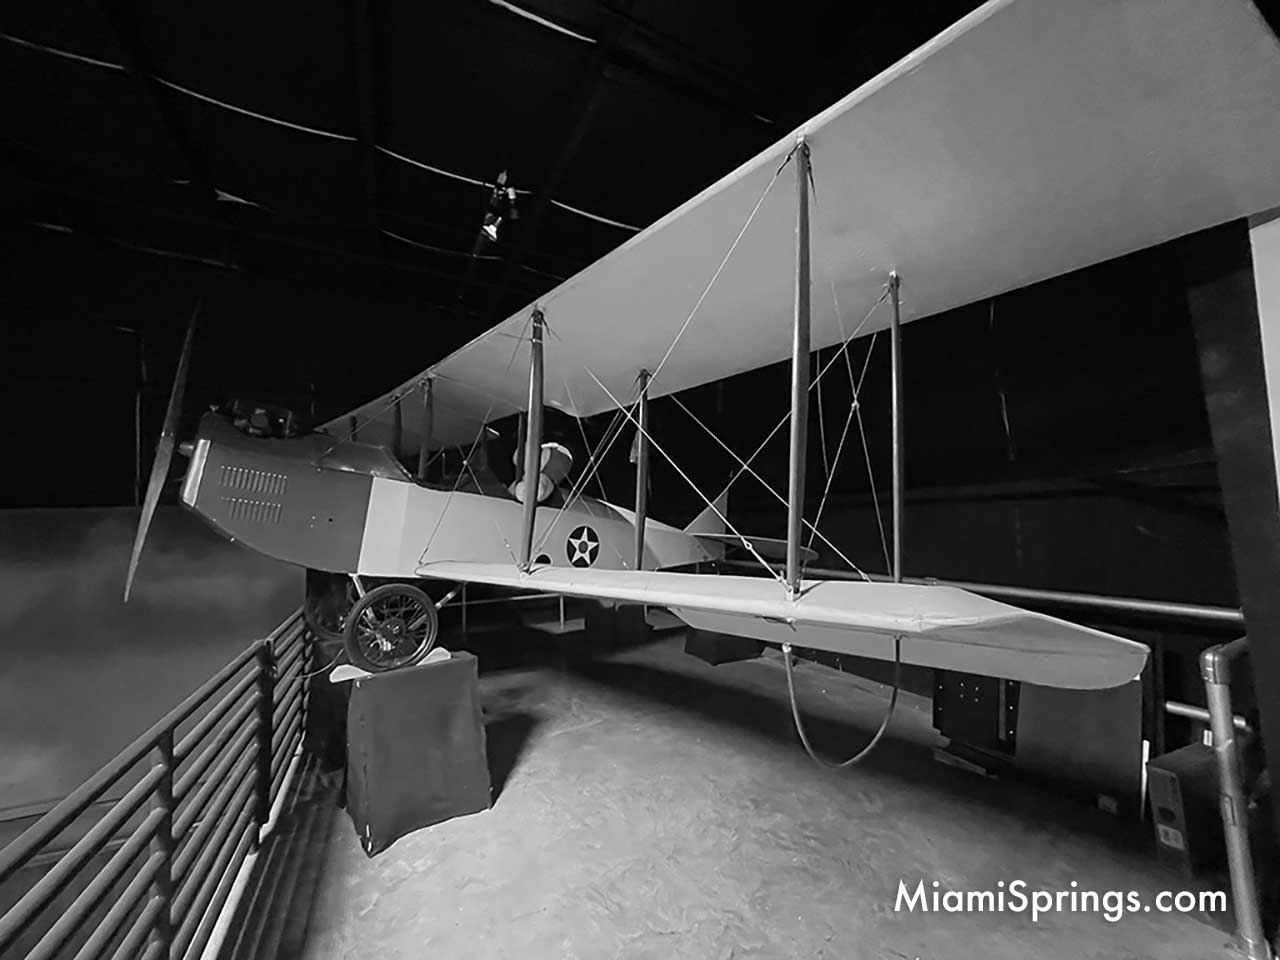 Curtiss JN-4 "JENNY" Biplane